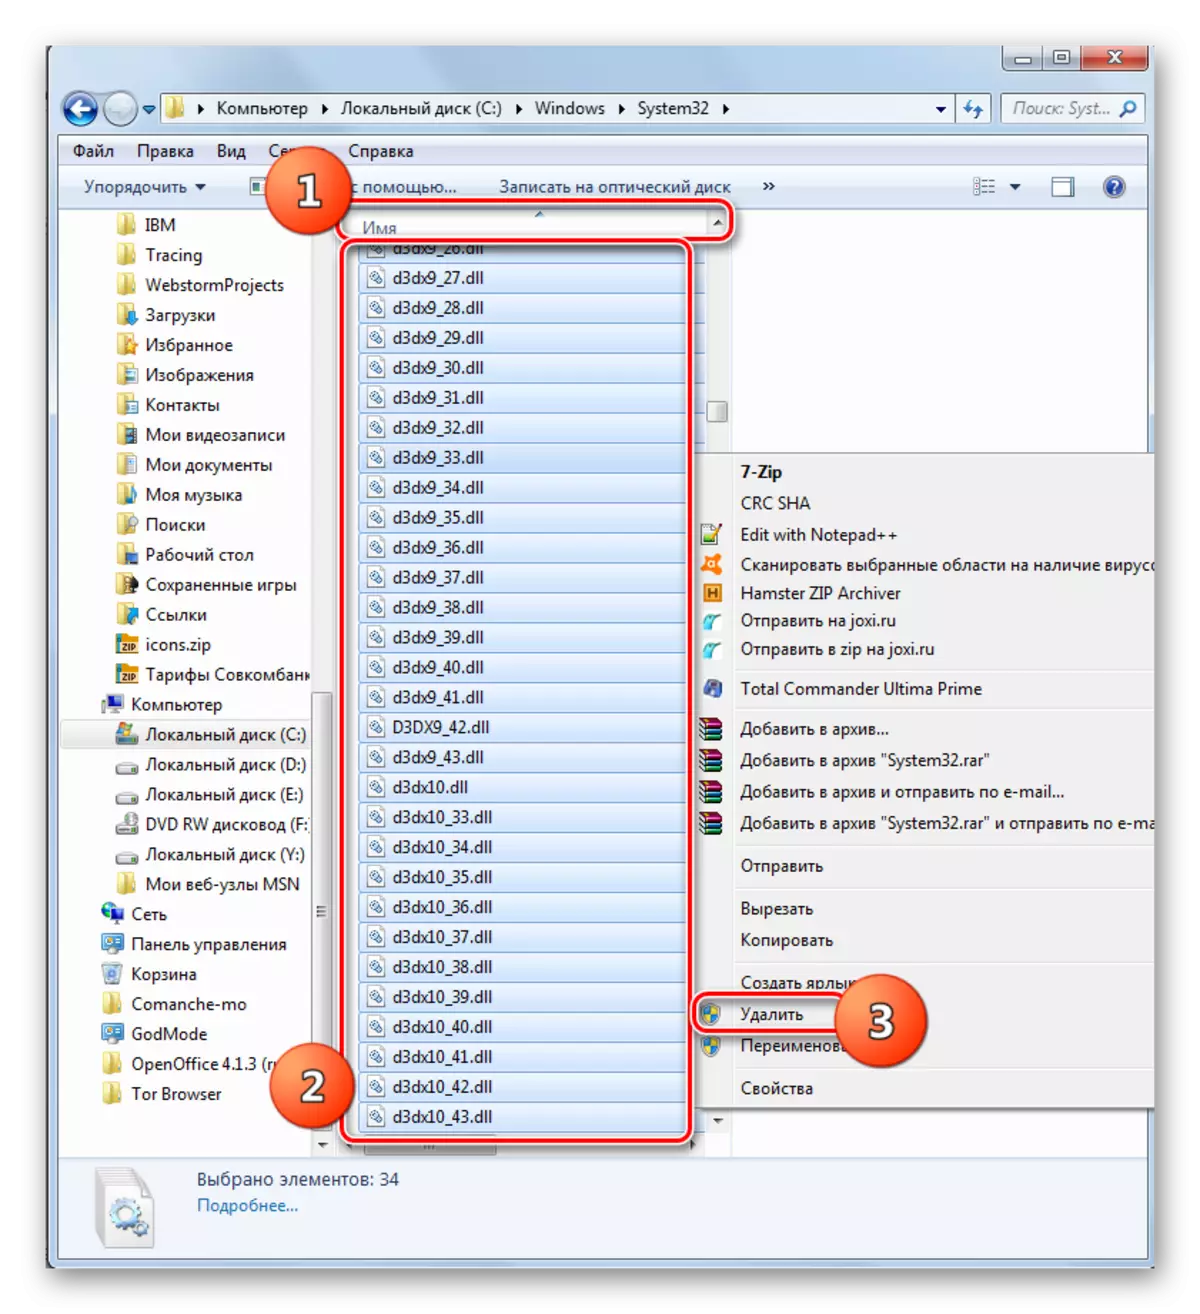 Přejít na smazání souborů DLL do složky System 32 v aplikaci Explorer v systému Windows 7